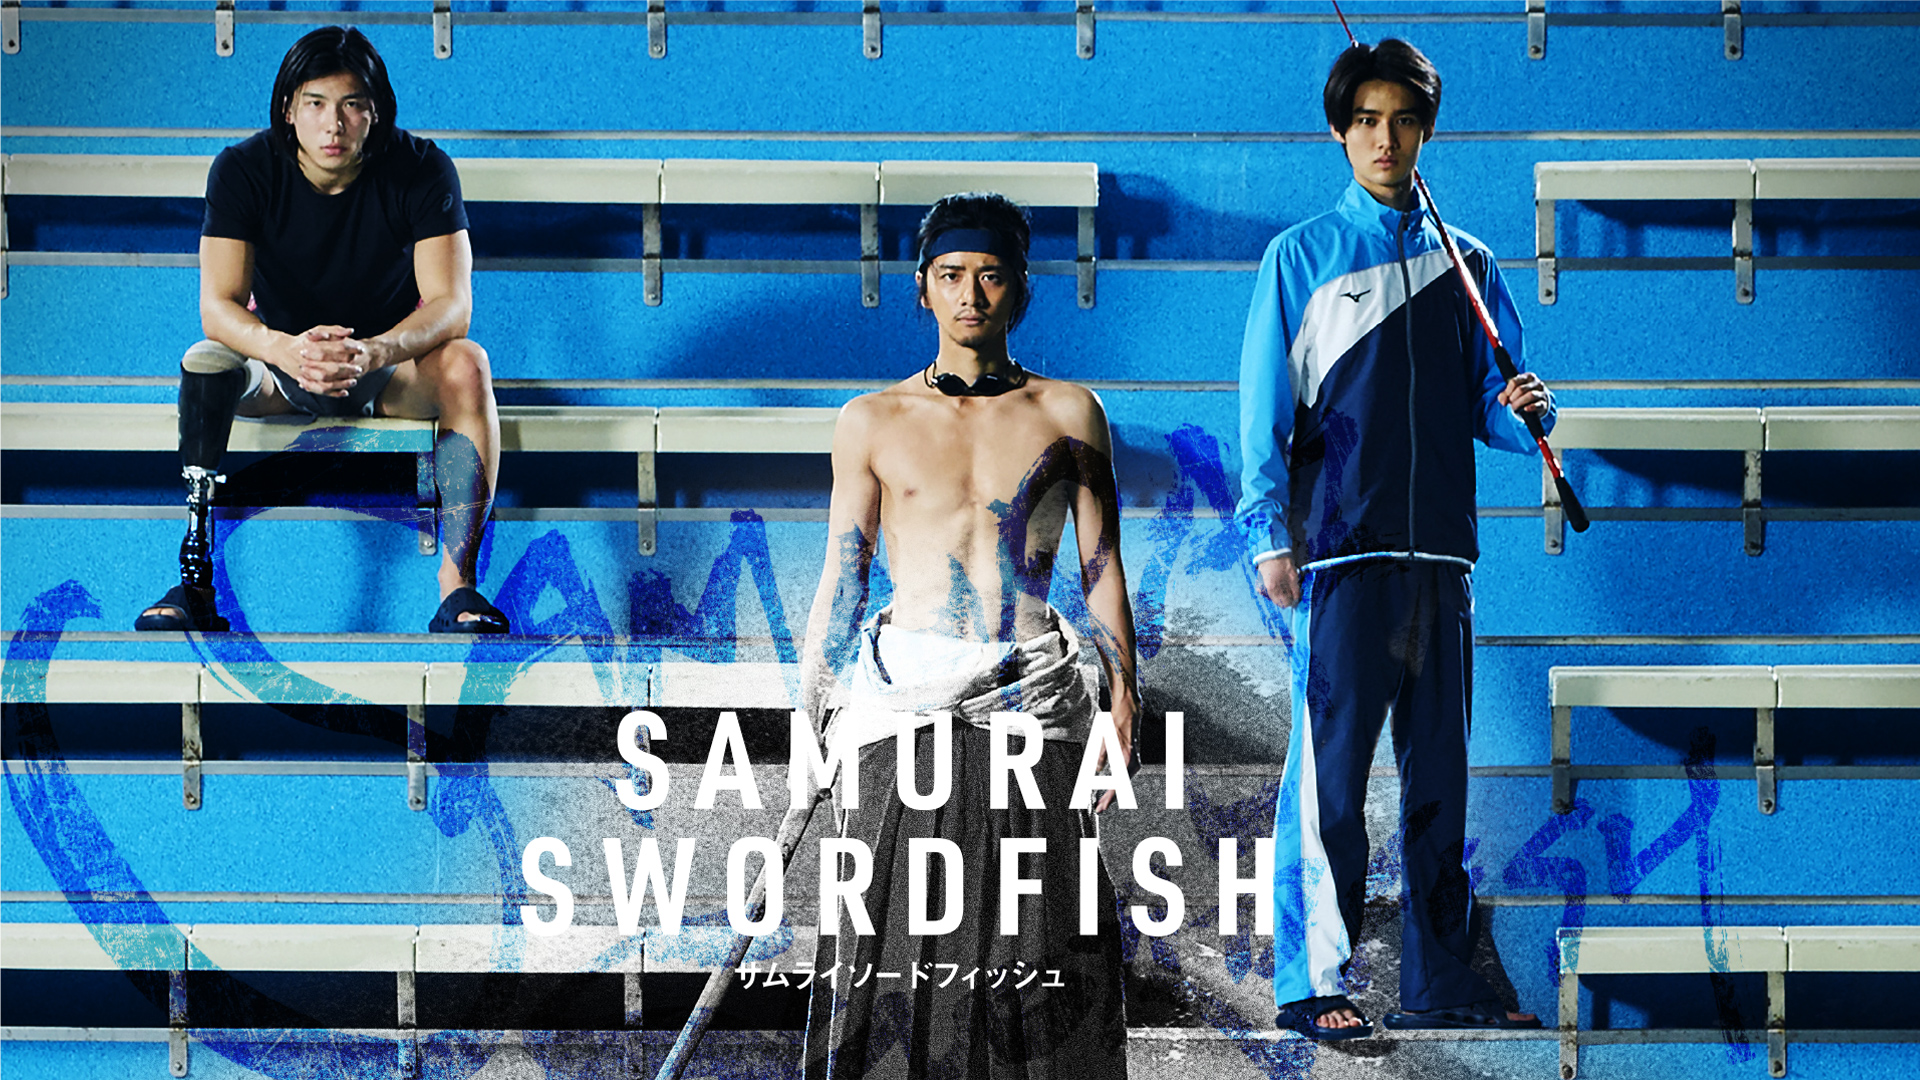 Review: Specially produced short film “Samurai Swordfish”